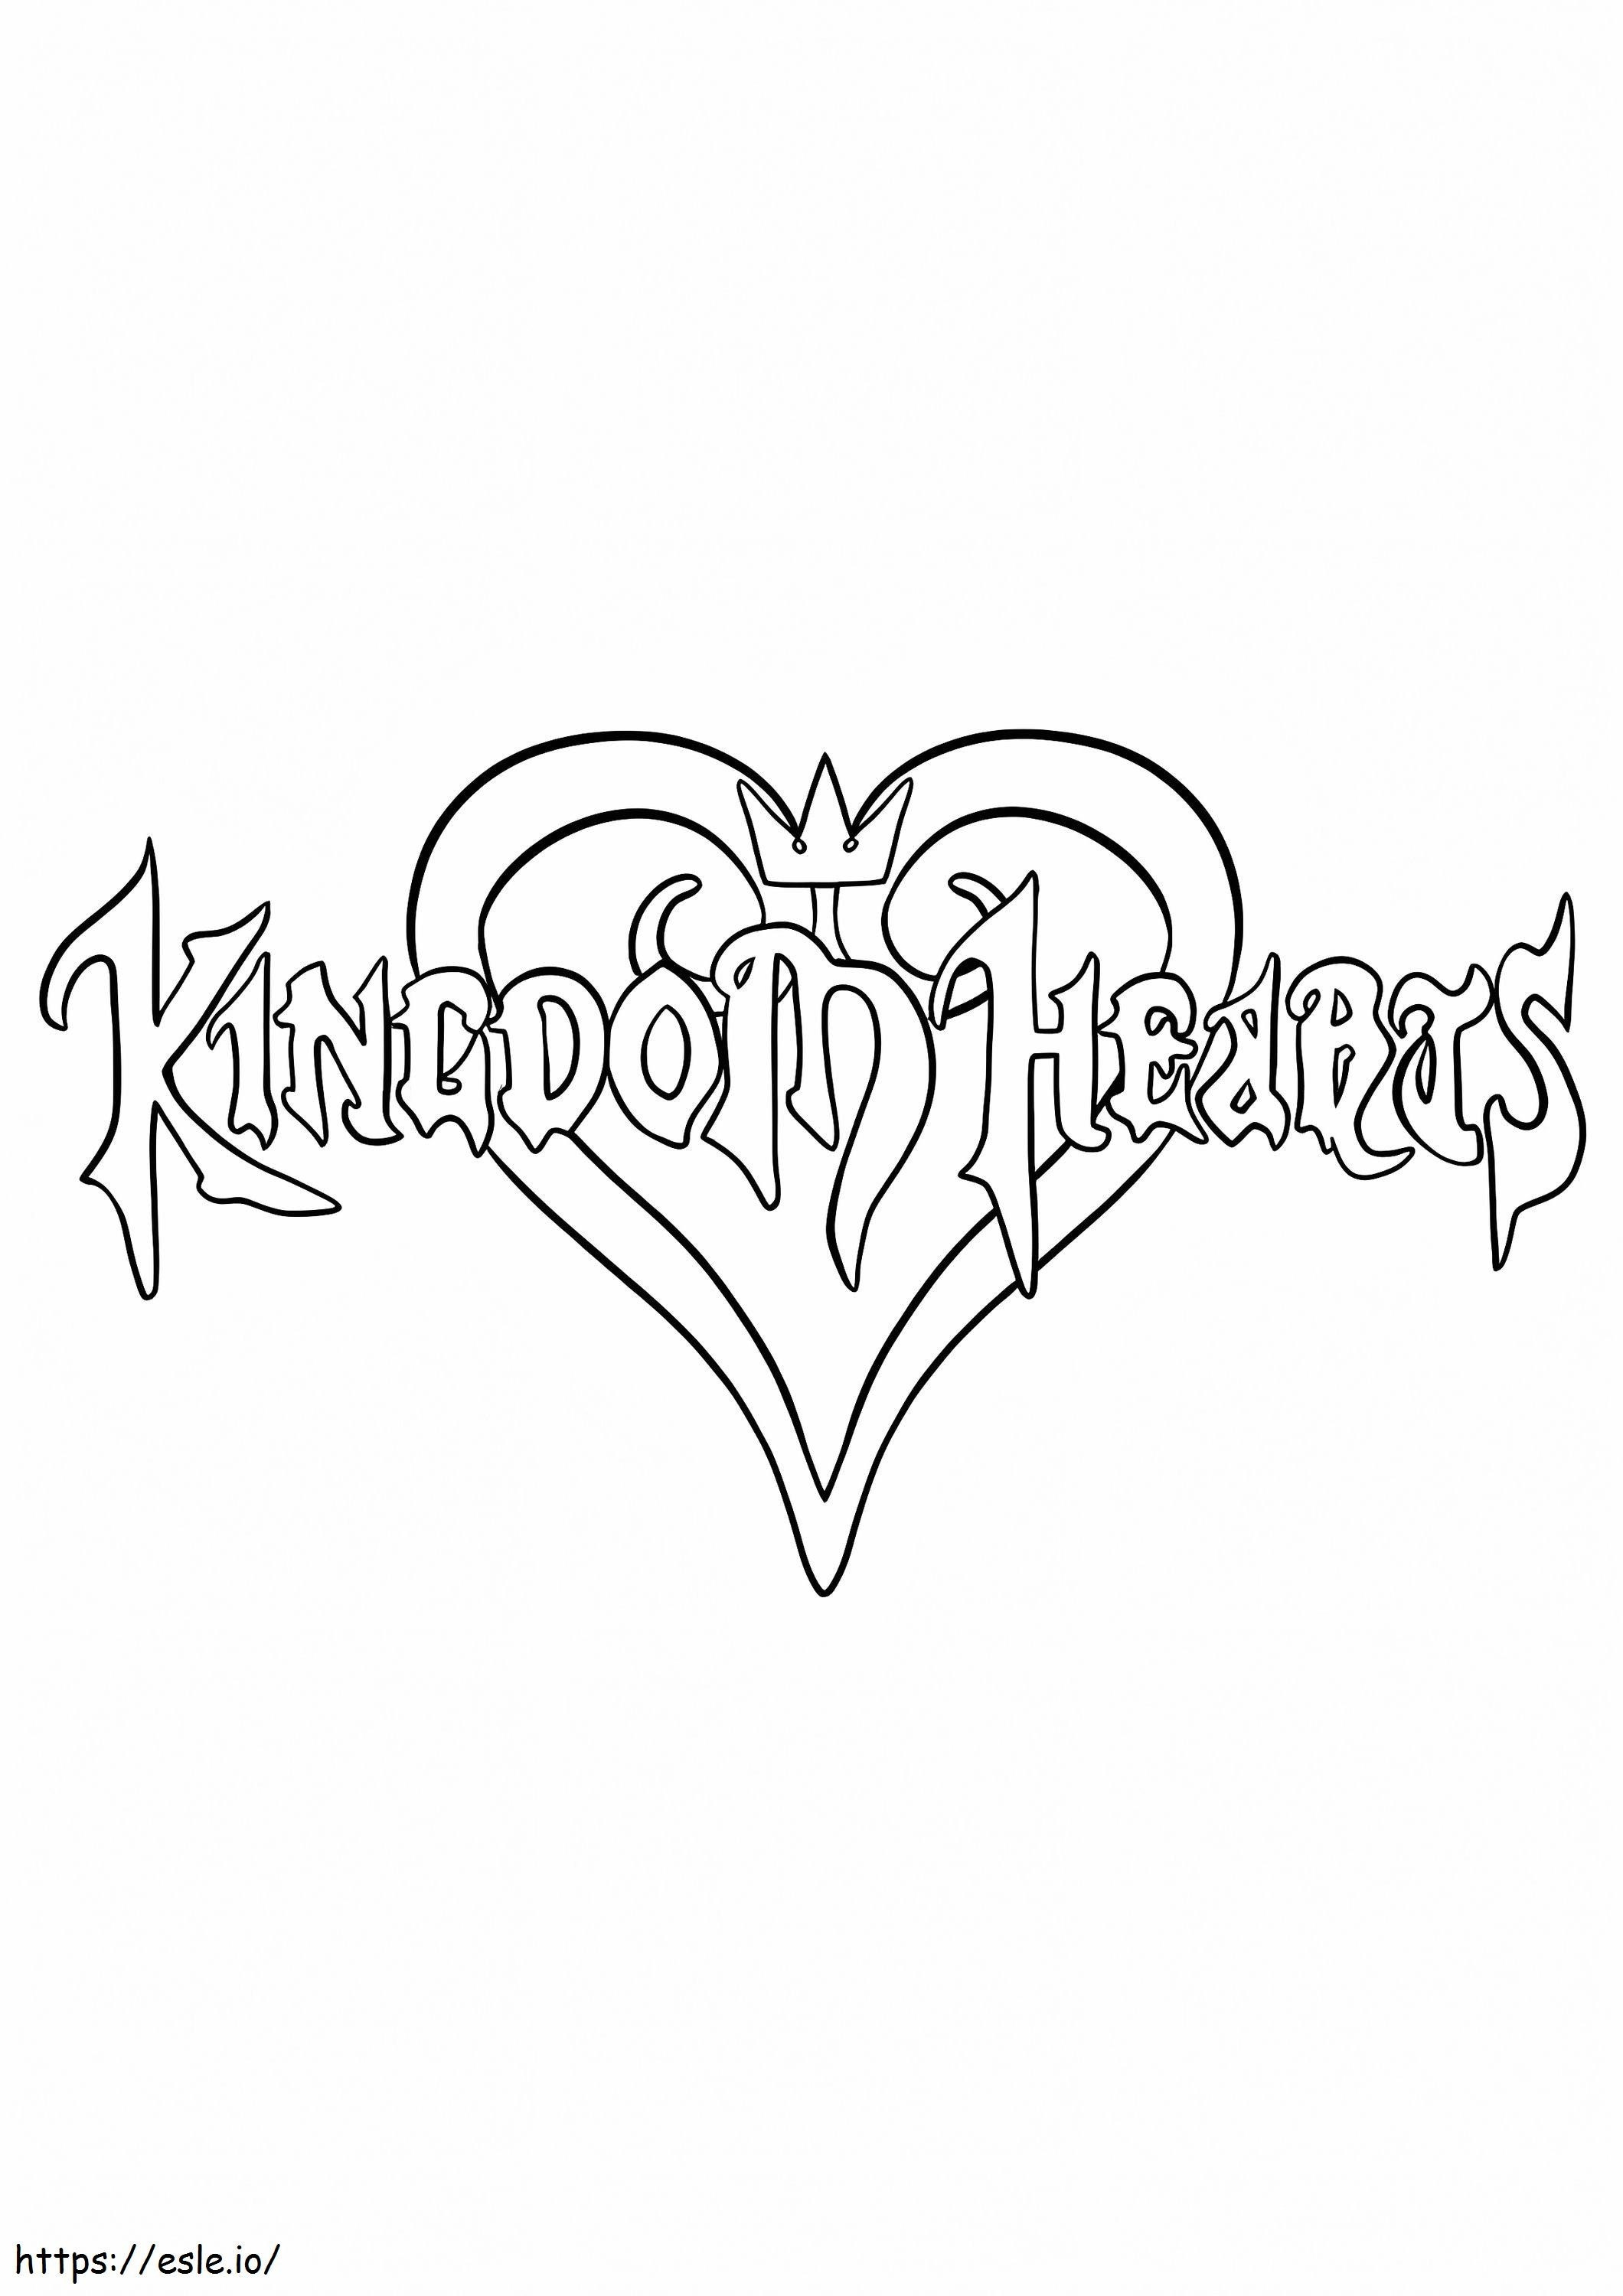 Kingdom Hearts Logo coloring page